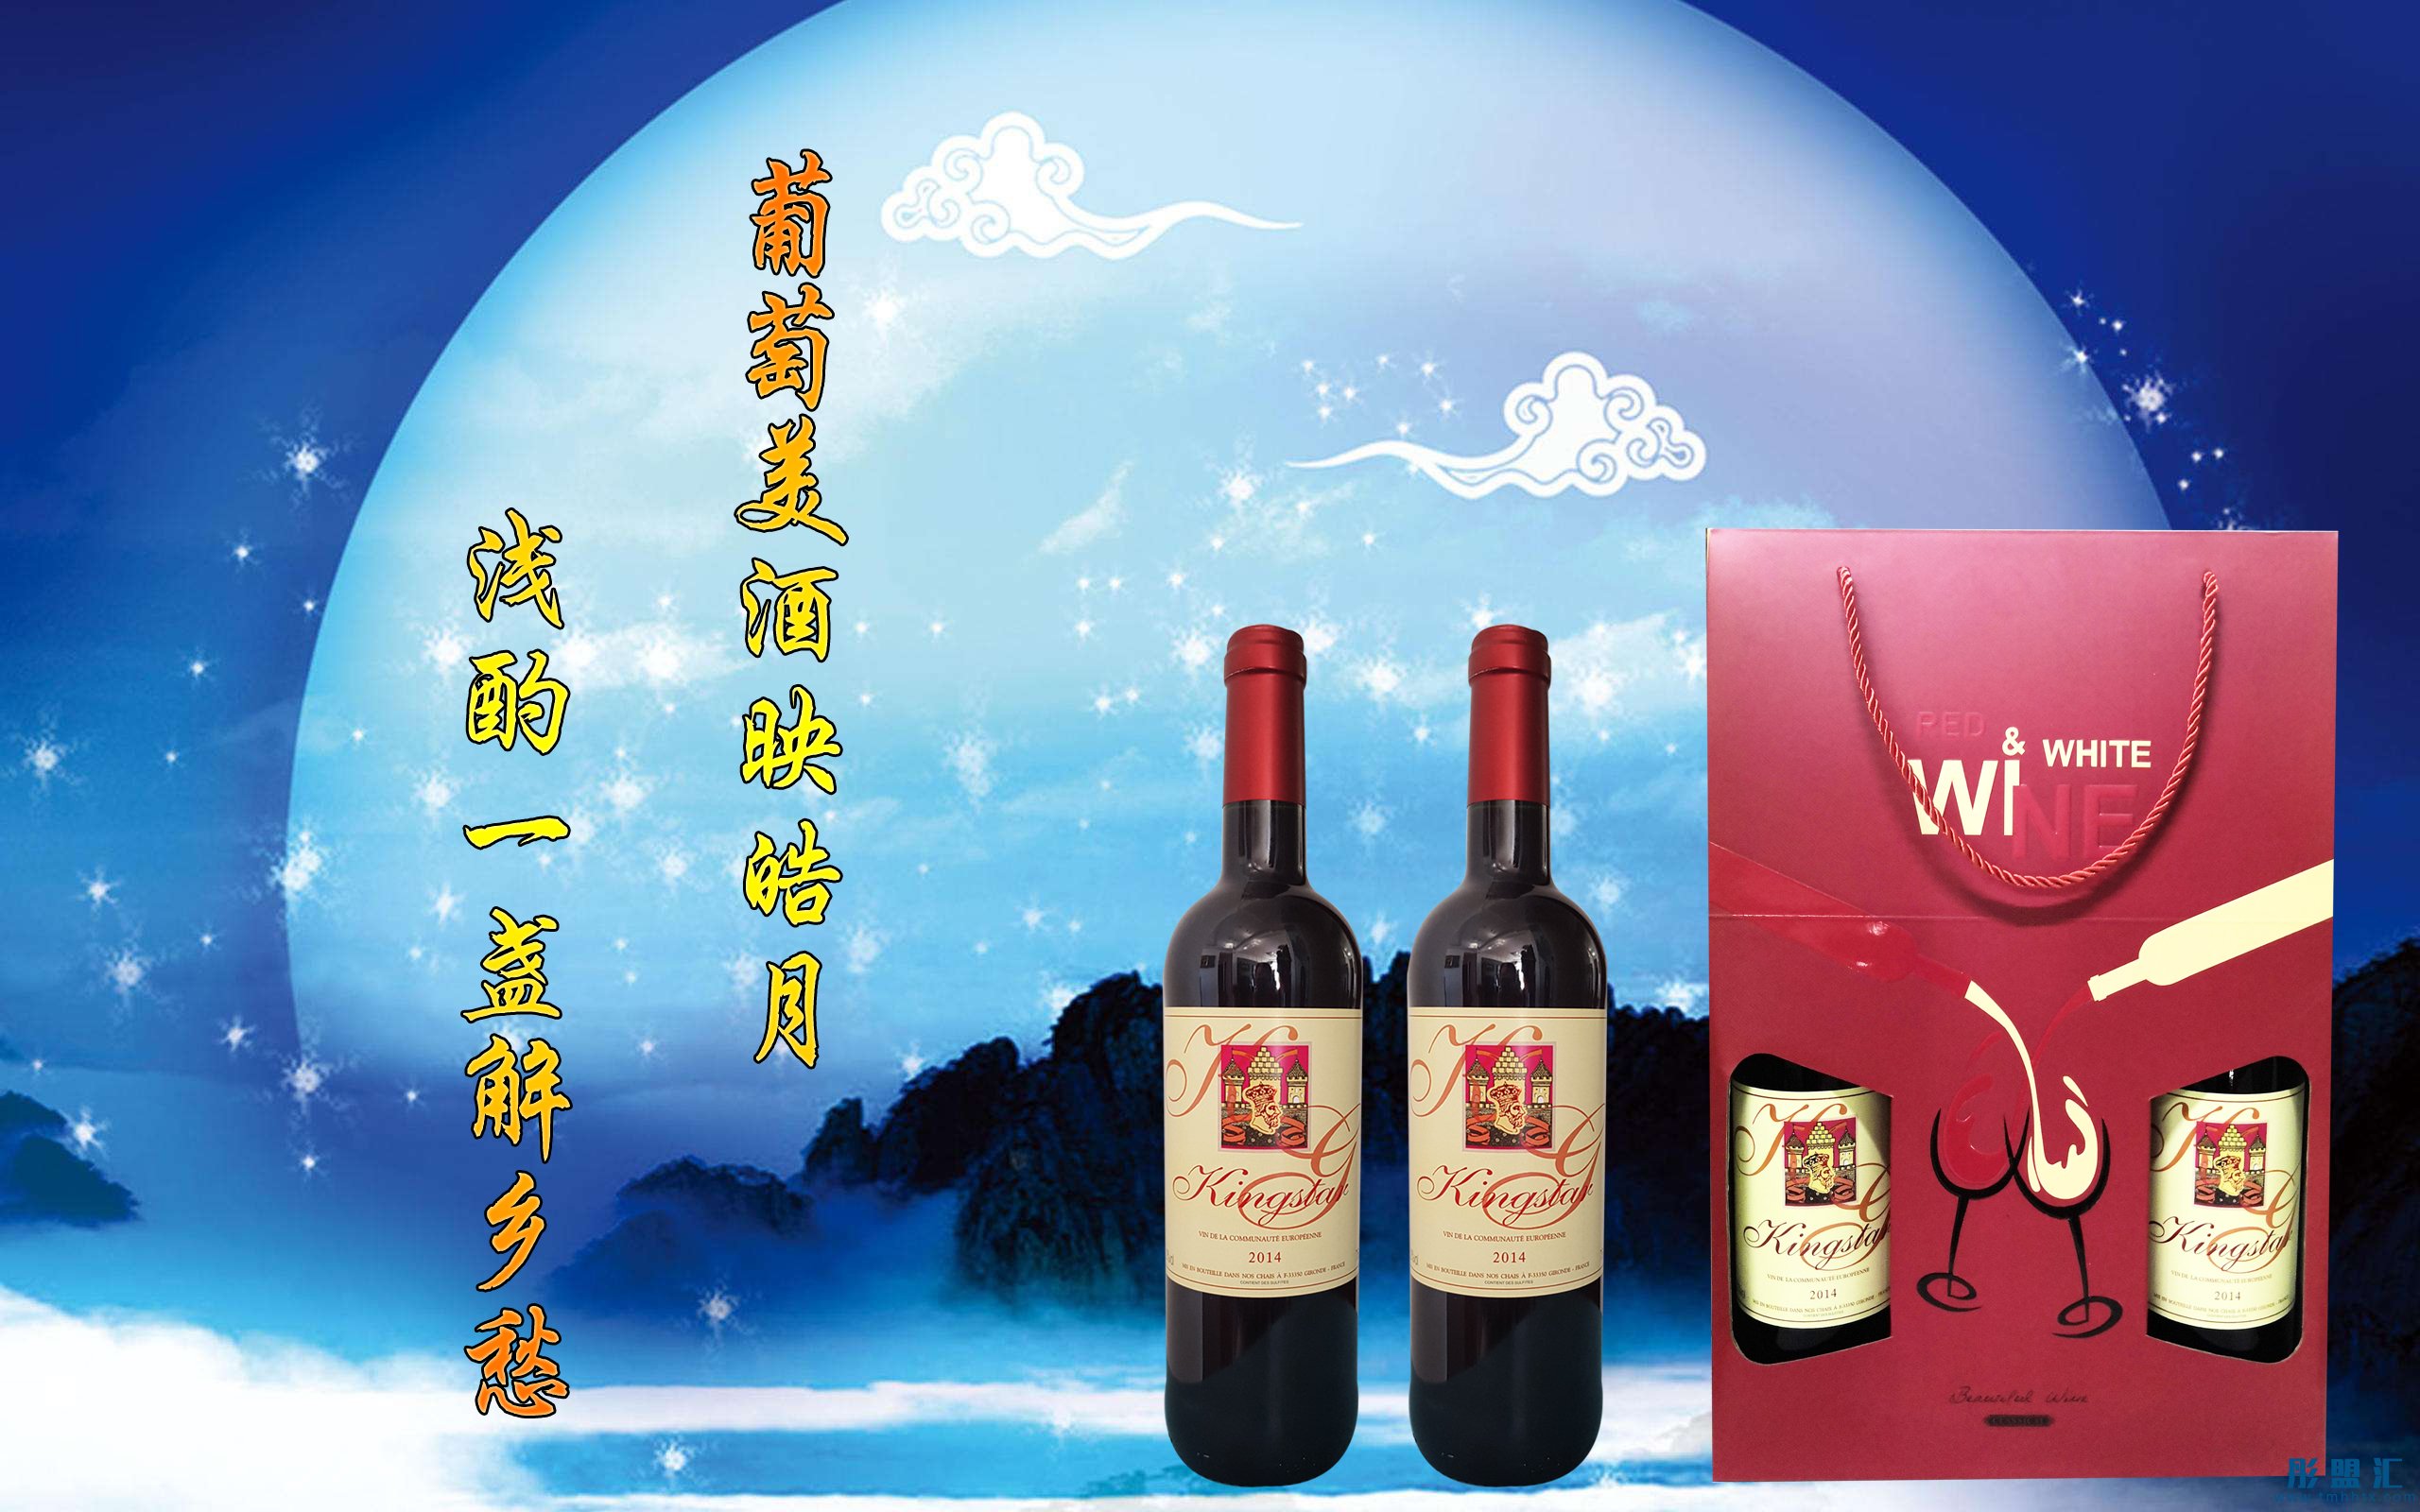 凯瑟王国际酒庄针对中秋佳节面向大众推出多款红酒礼盒